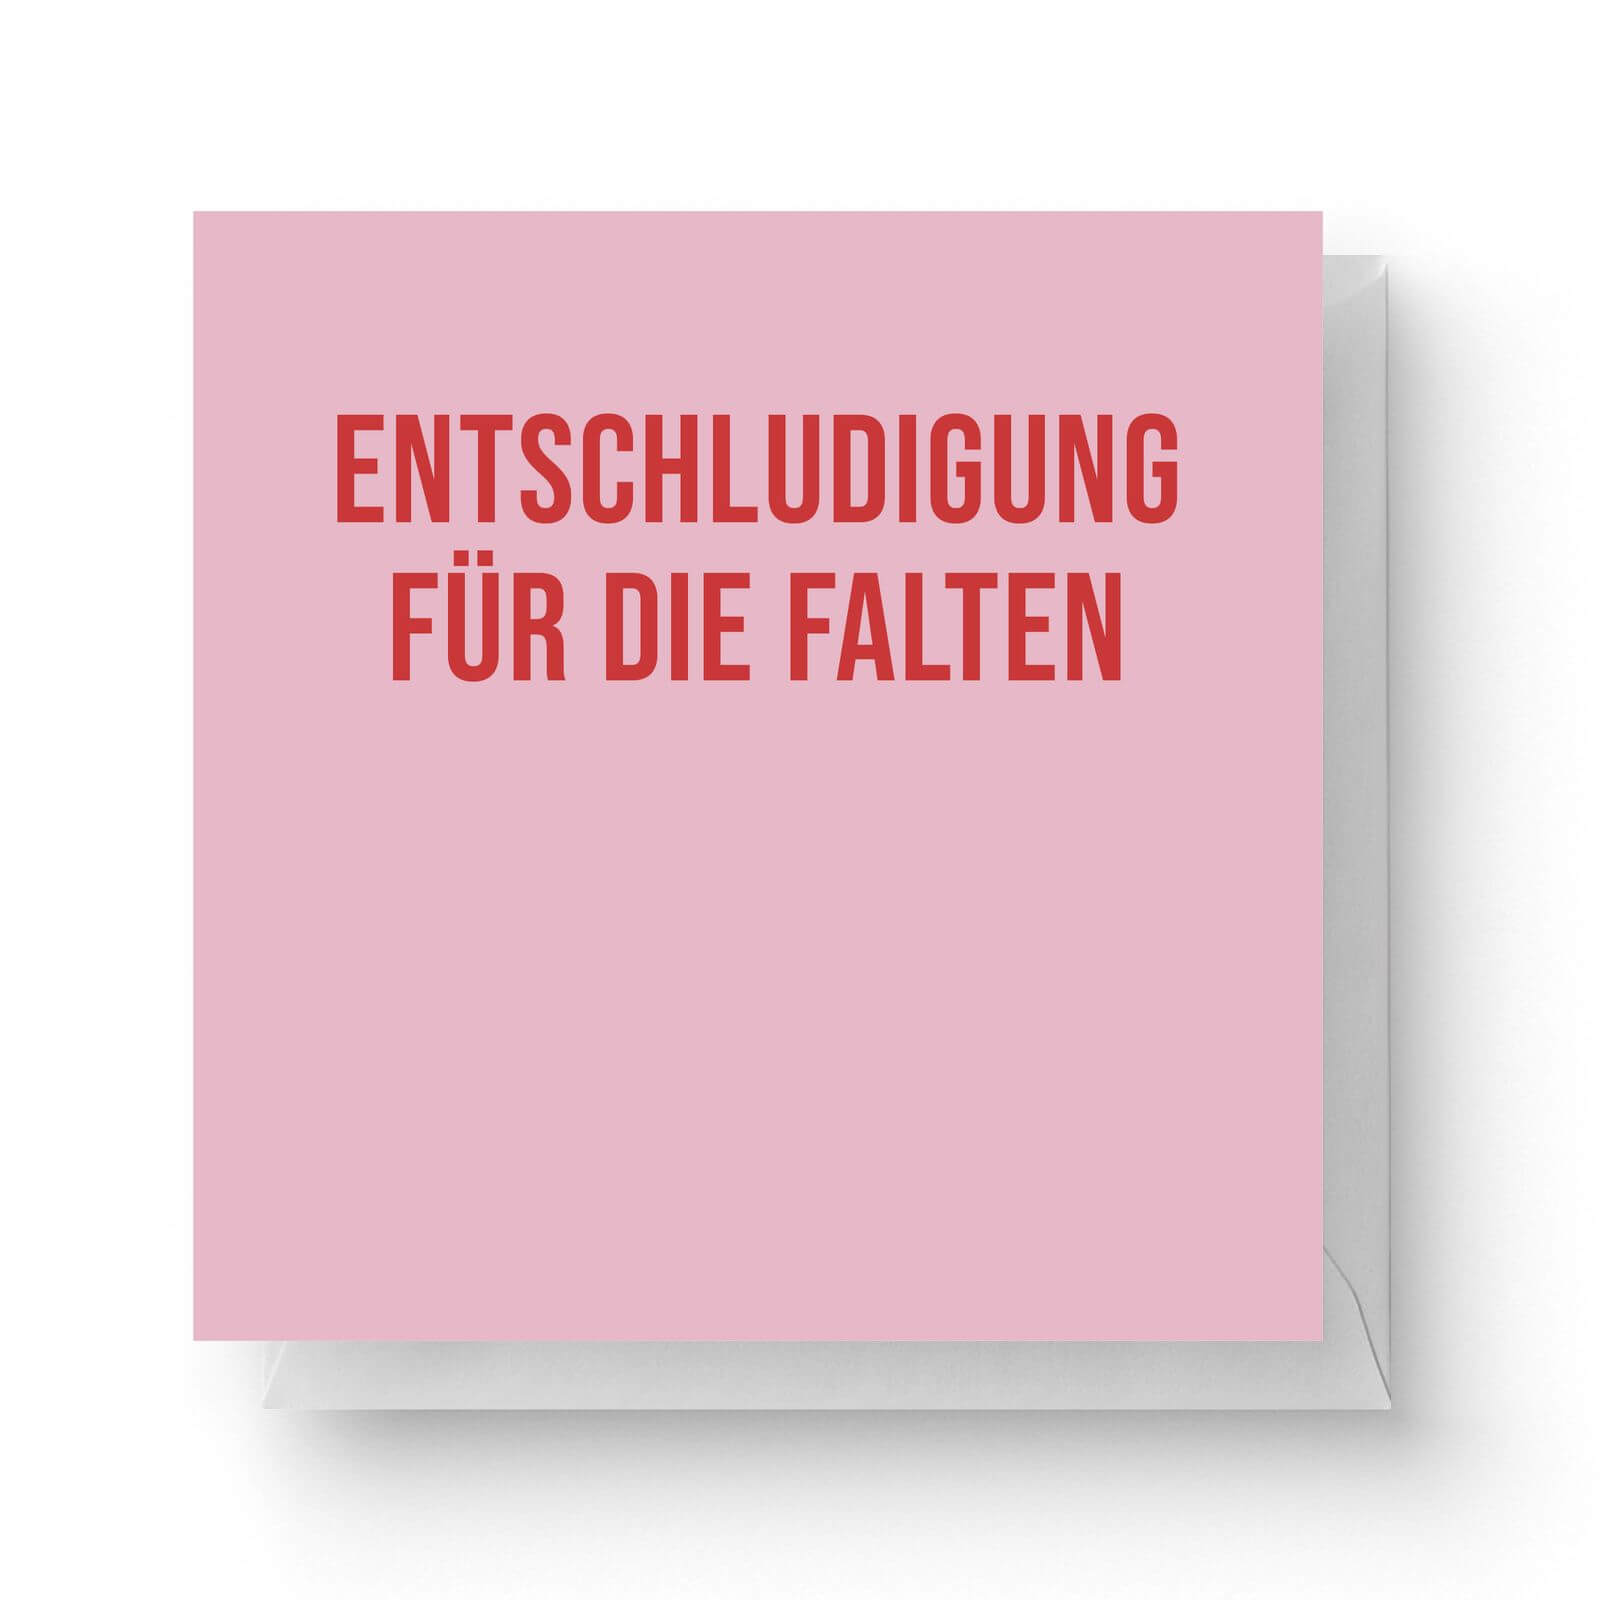 Image of Entschludigung Für Die Falten Square Greetings Card (14.8cm x 14.8cm)